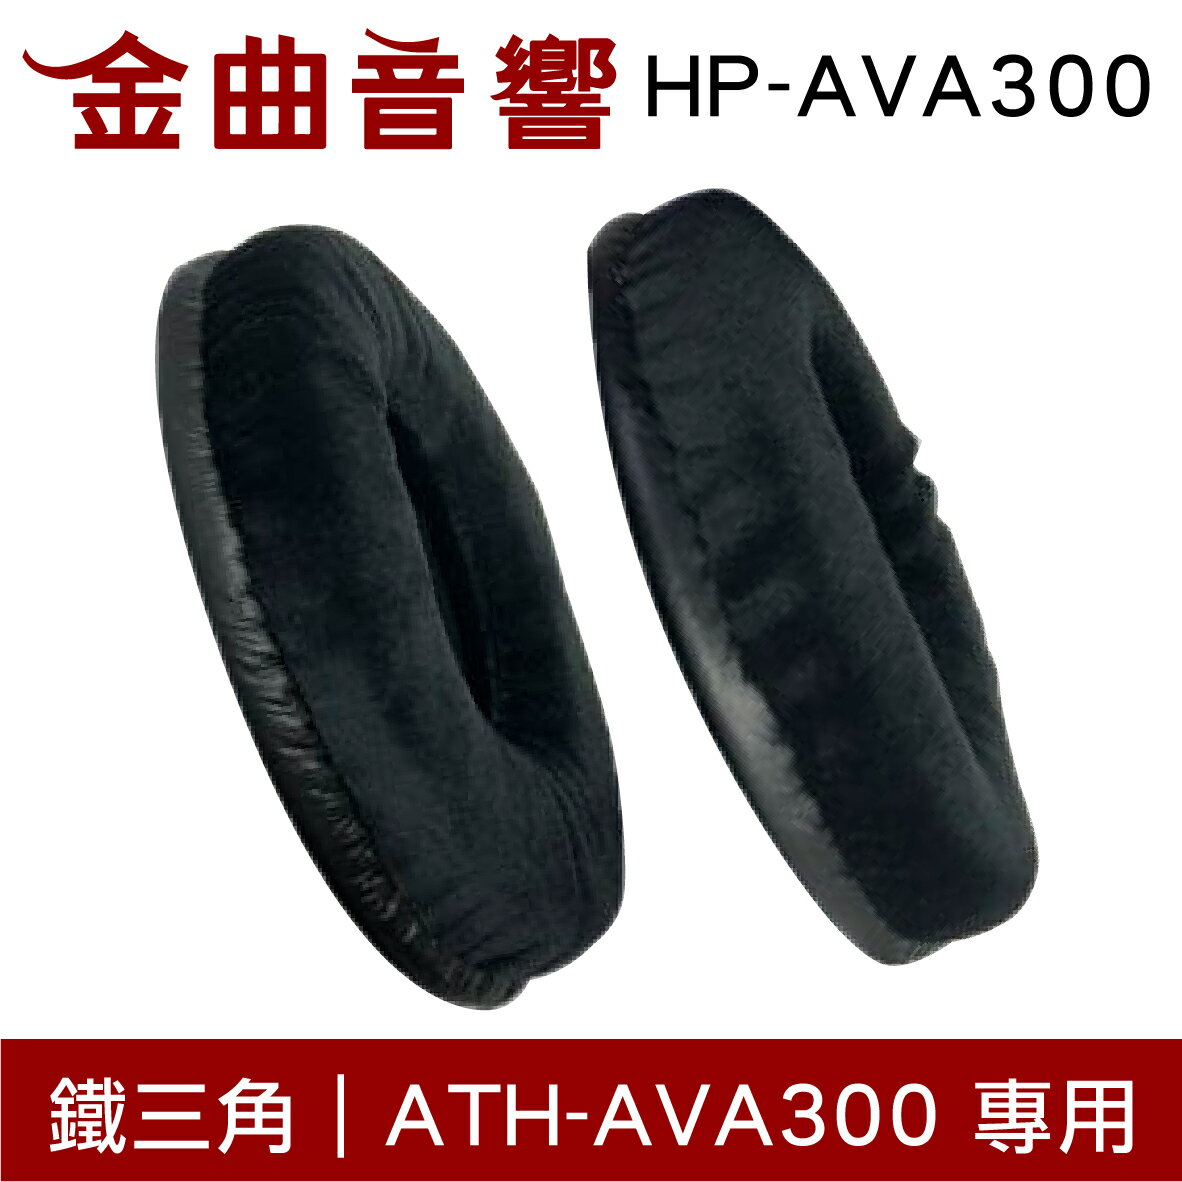 鐵三角 HP-AVA300 替換耳罩 一對 ATH-AVA300 專用 | 金曲音響